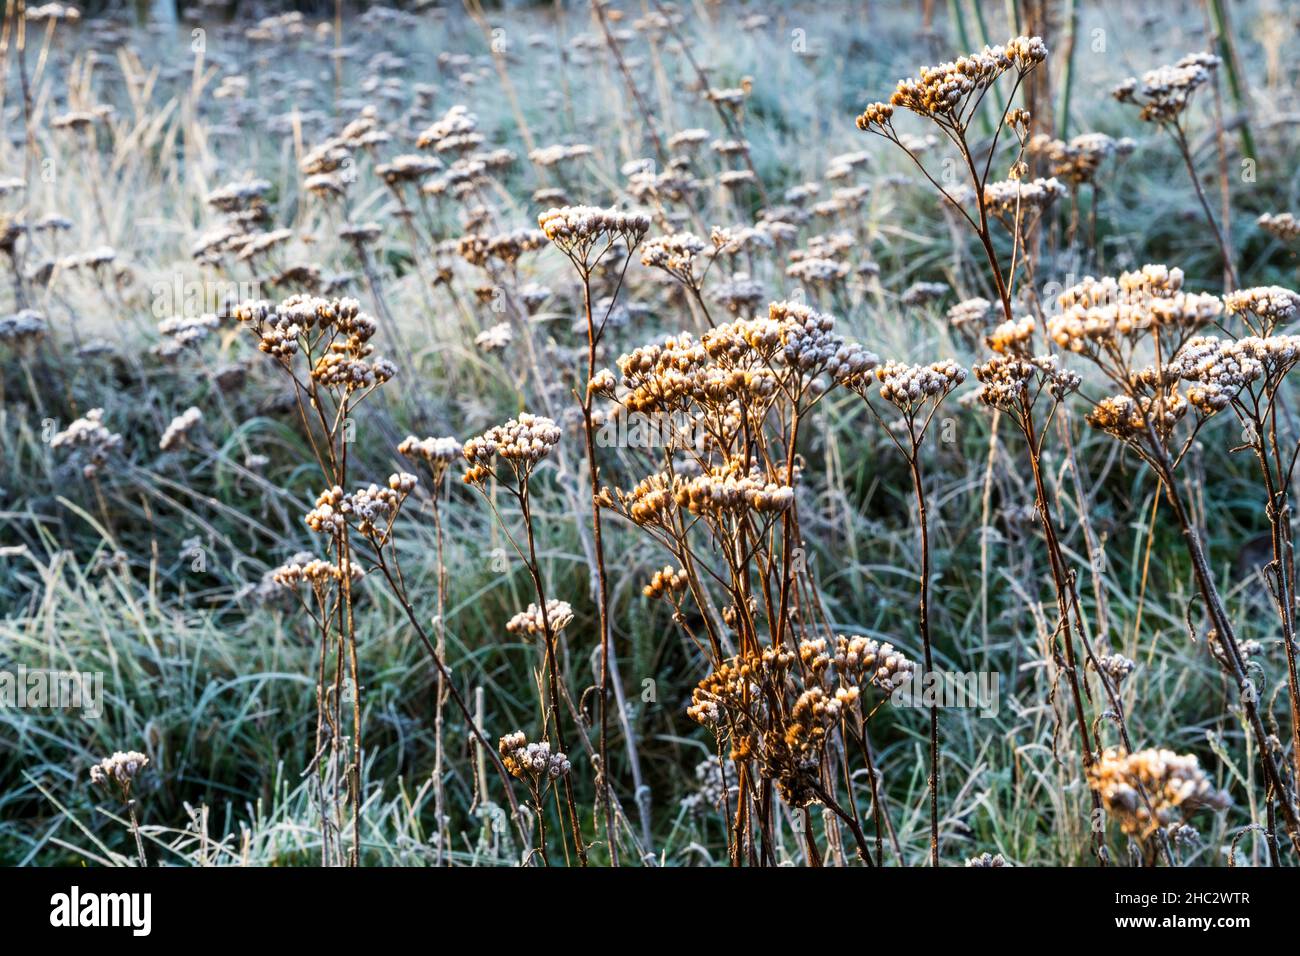 Tote Zierblumen- und Samenköpfe, die übrig bleiben, um strukturelles Interesse im Garten zu schaffen, der an einem hellen Wintertag mit Frost bedeckt ist. Stockfoto